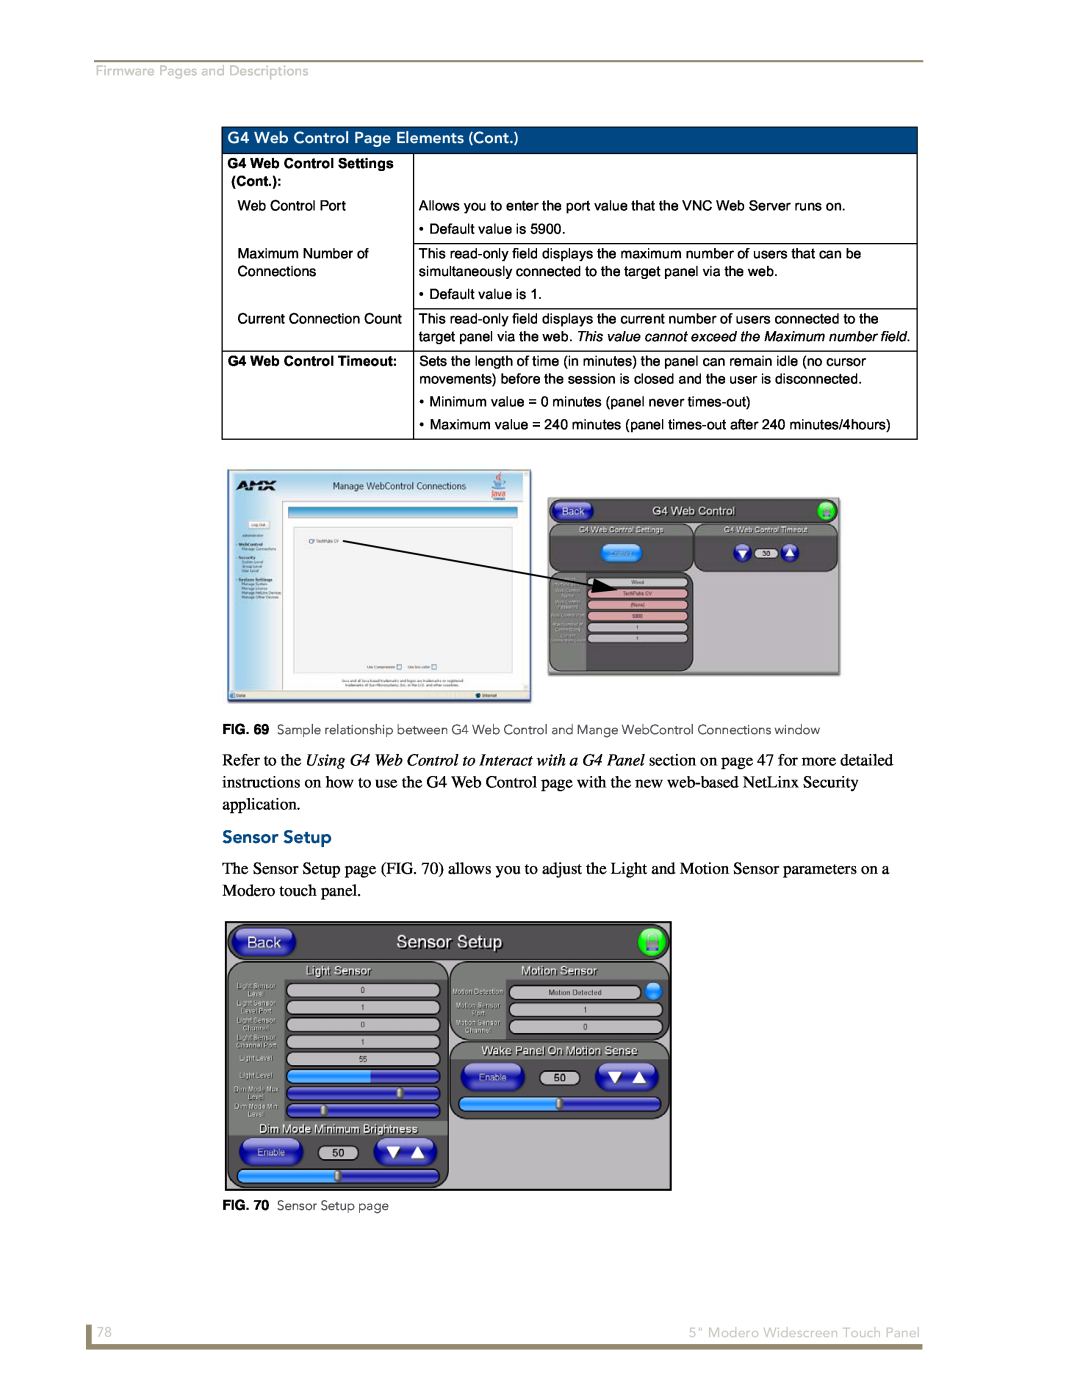 AMX NXD-CV5 Sensor Setup, G4 Web Control Page Elements Cont, Firmware Pages and Descriptions, G4 Web Control Settings 